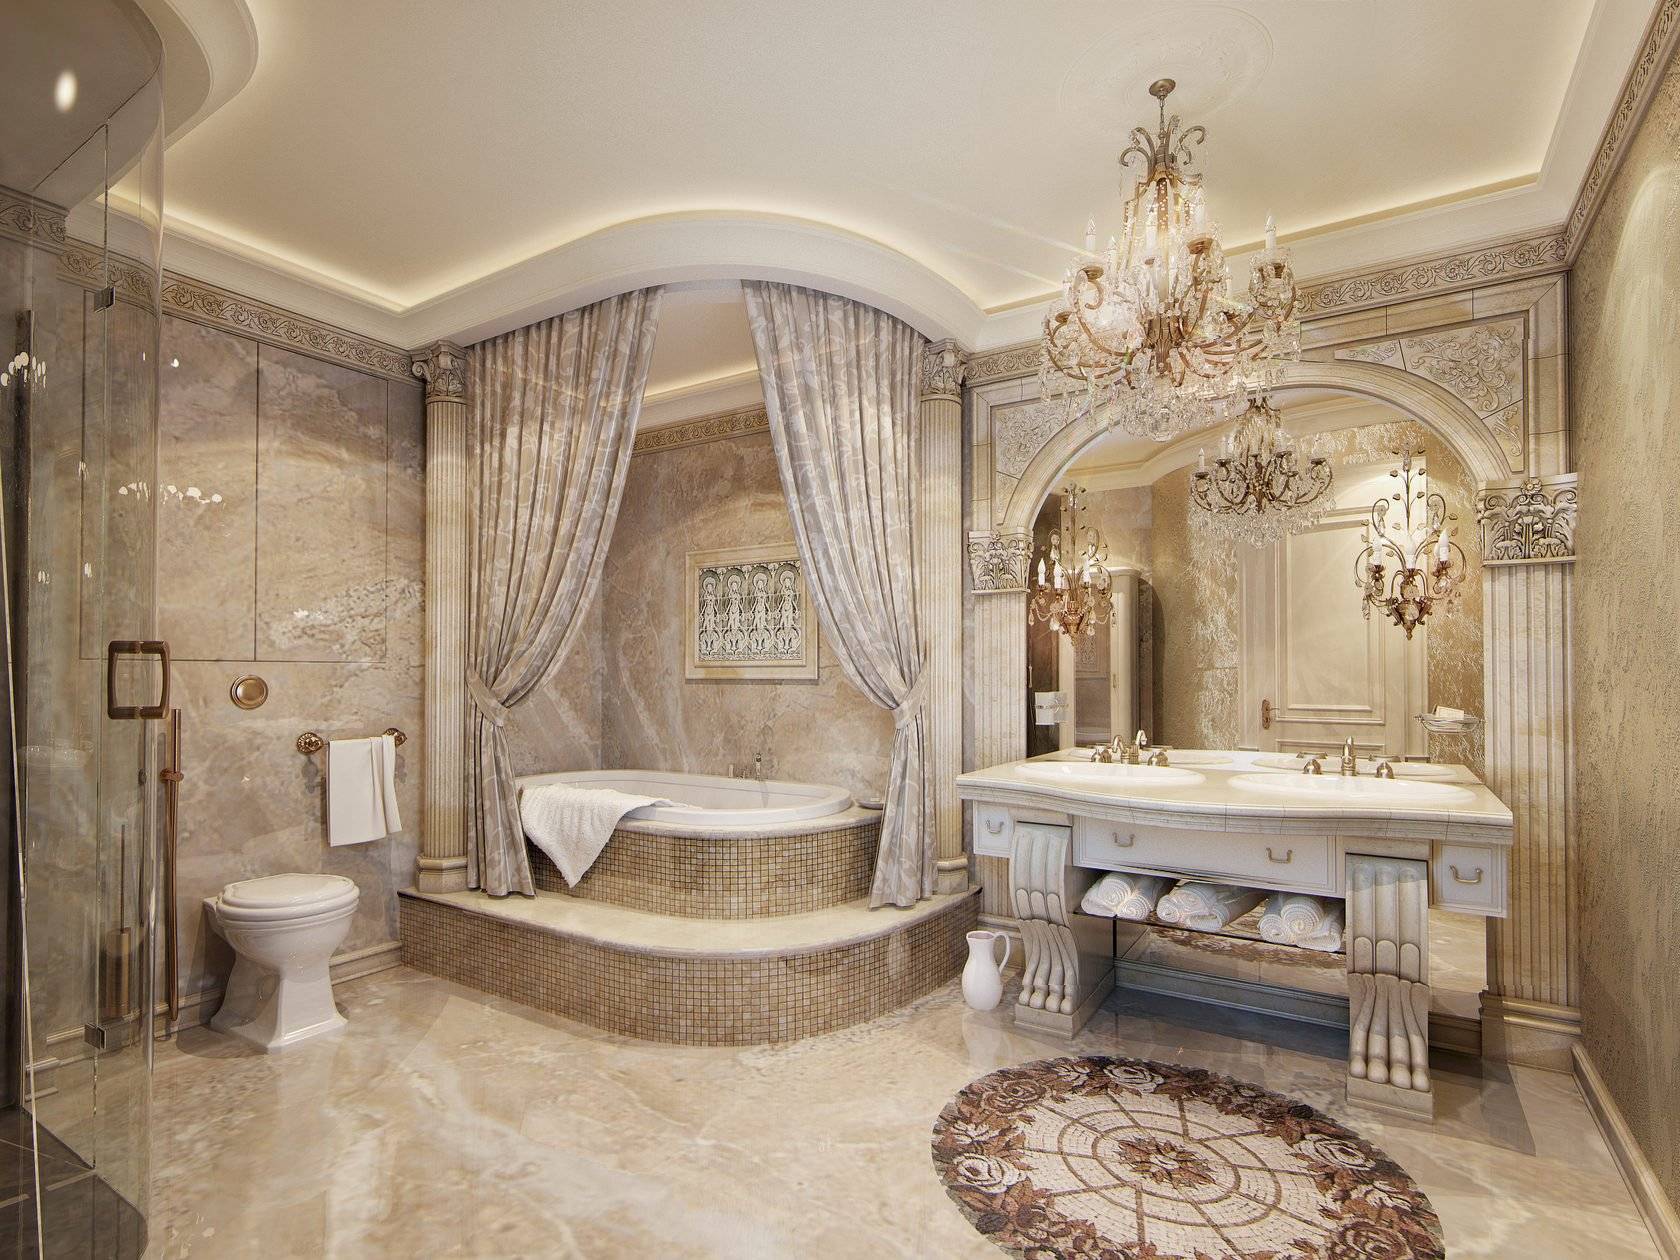 Итальянский стиль ванной комнаты - фото дизайна интерьеров